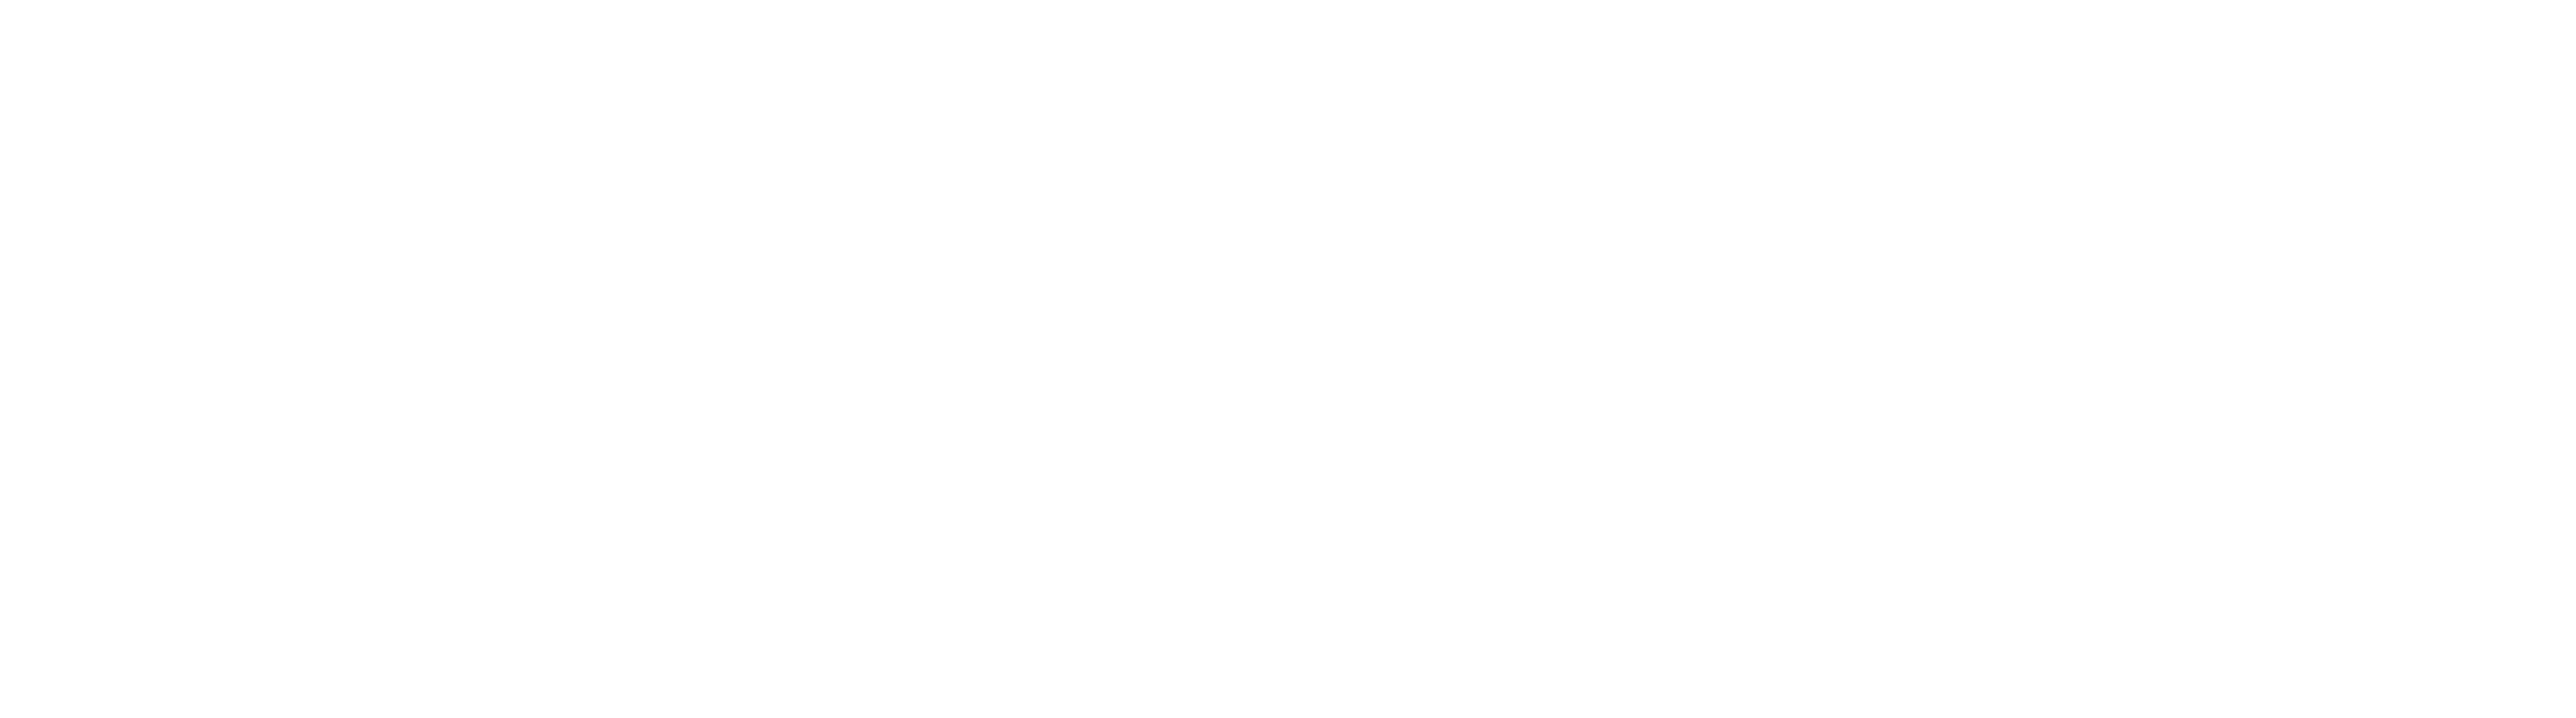 A Journal for Jordan logo